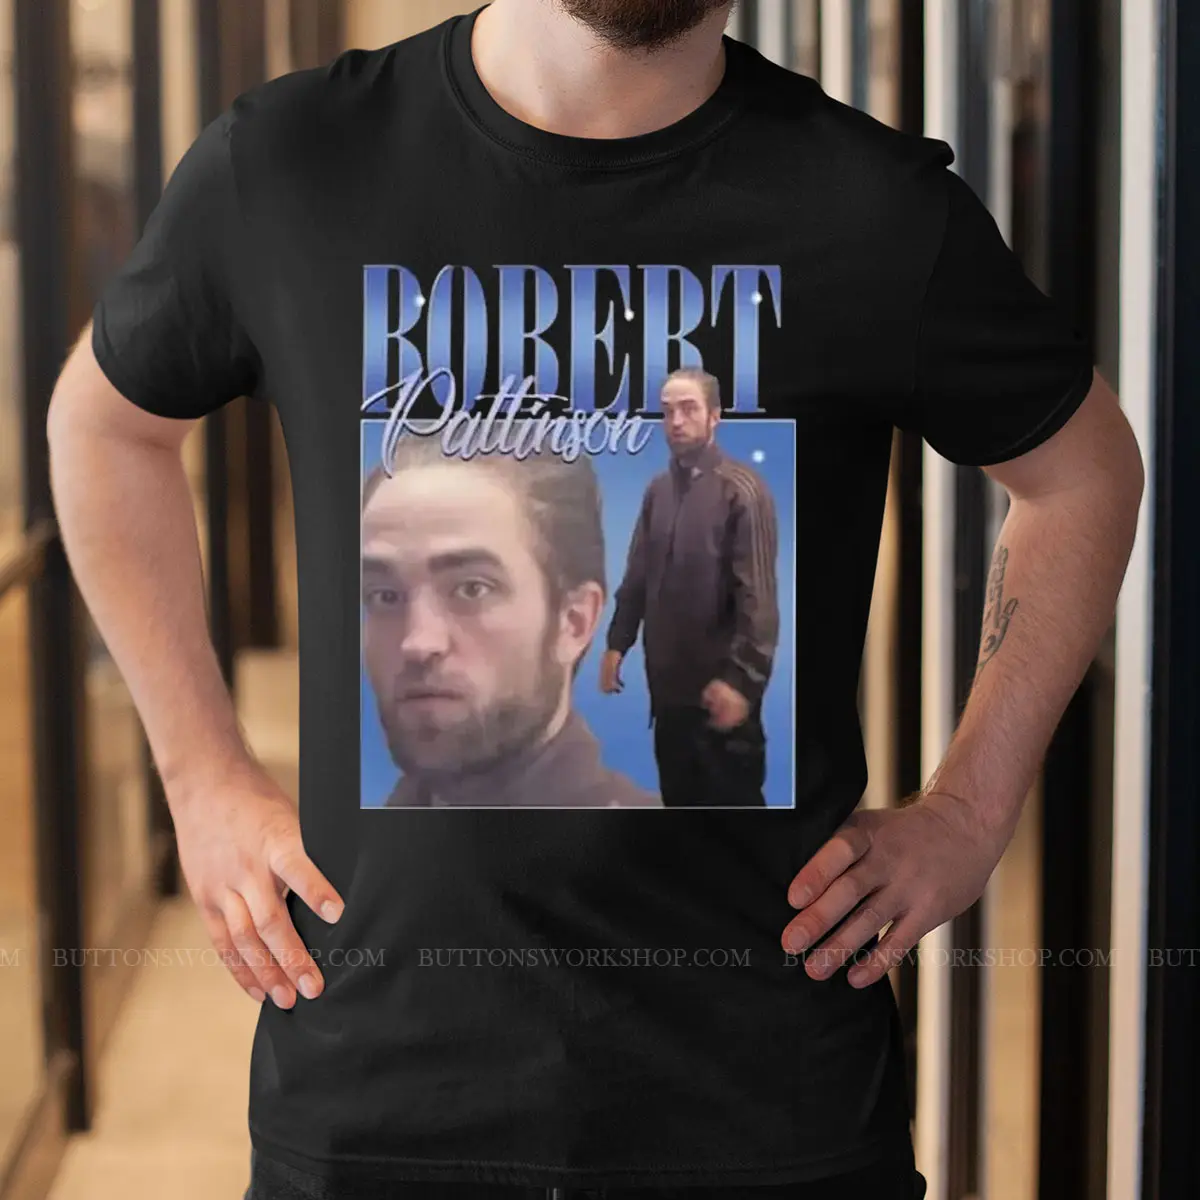 Robert Pattinson Tshirt Unisex Tshirt